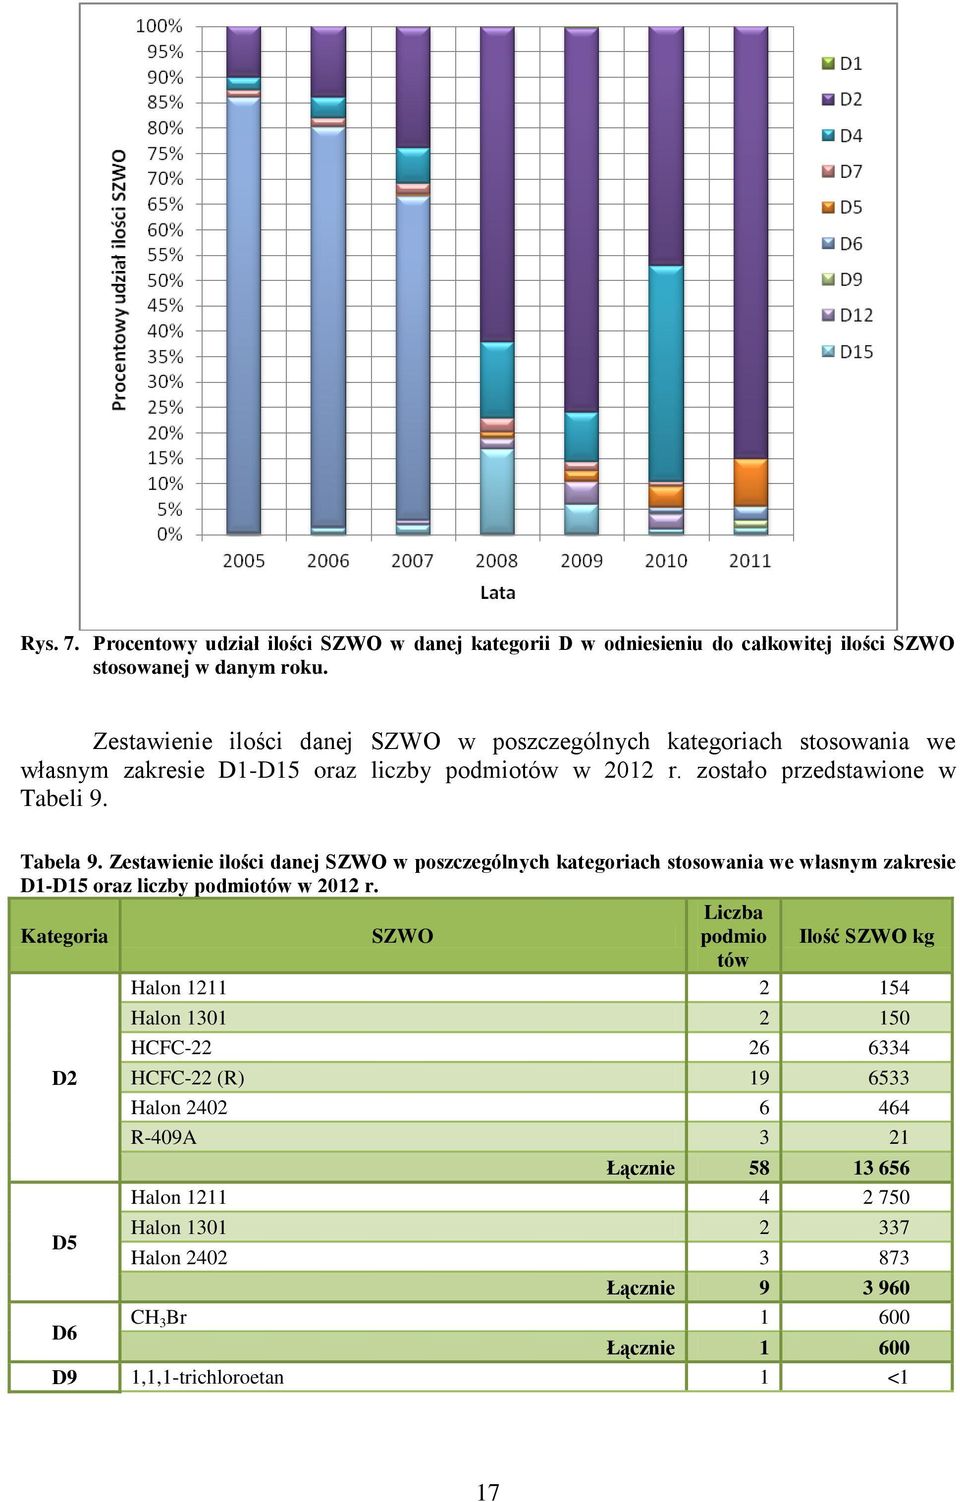 Zestawienie ilości danej SZWO w poszczególnych kategoriach stosowania we własnym zakresie D1-D15 oraz liczby podmiotów w 2012 r.